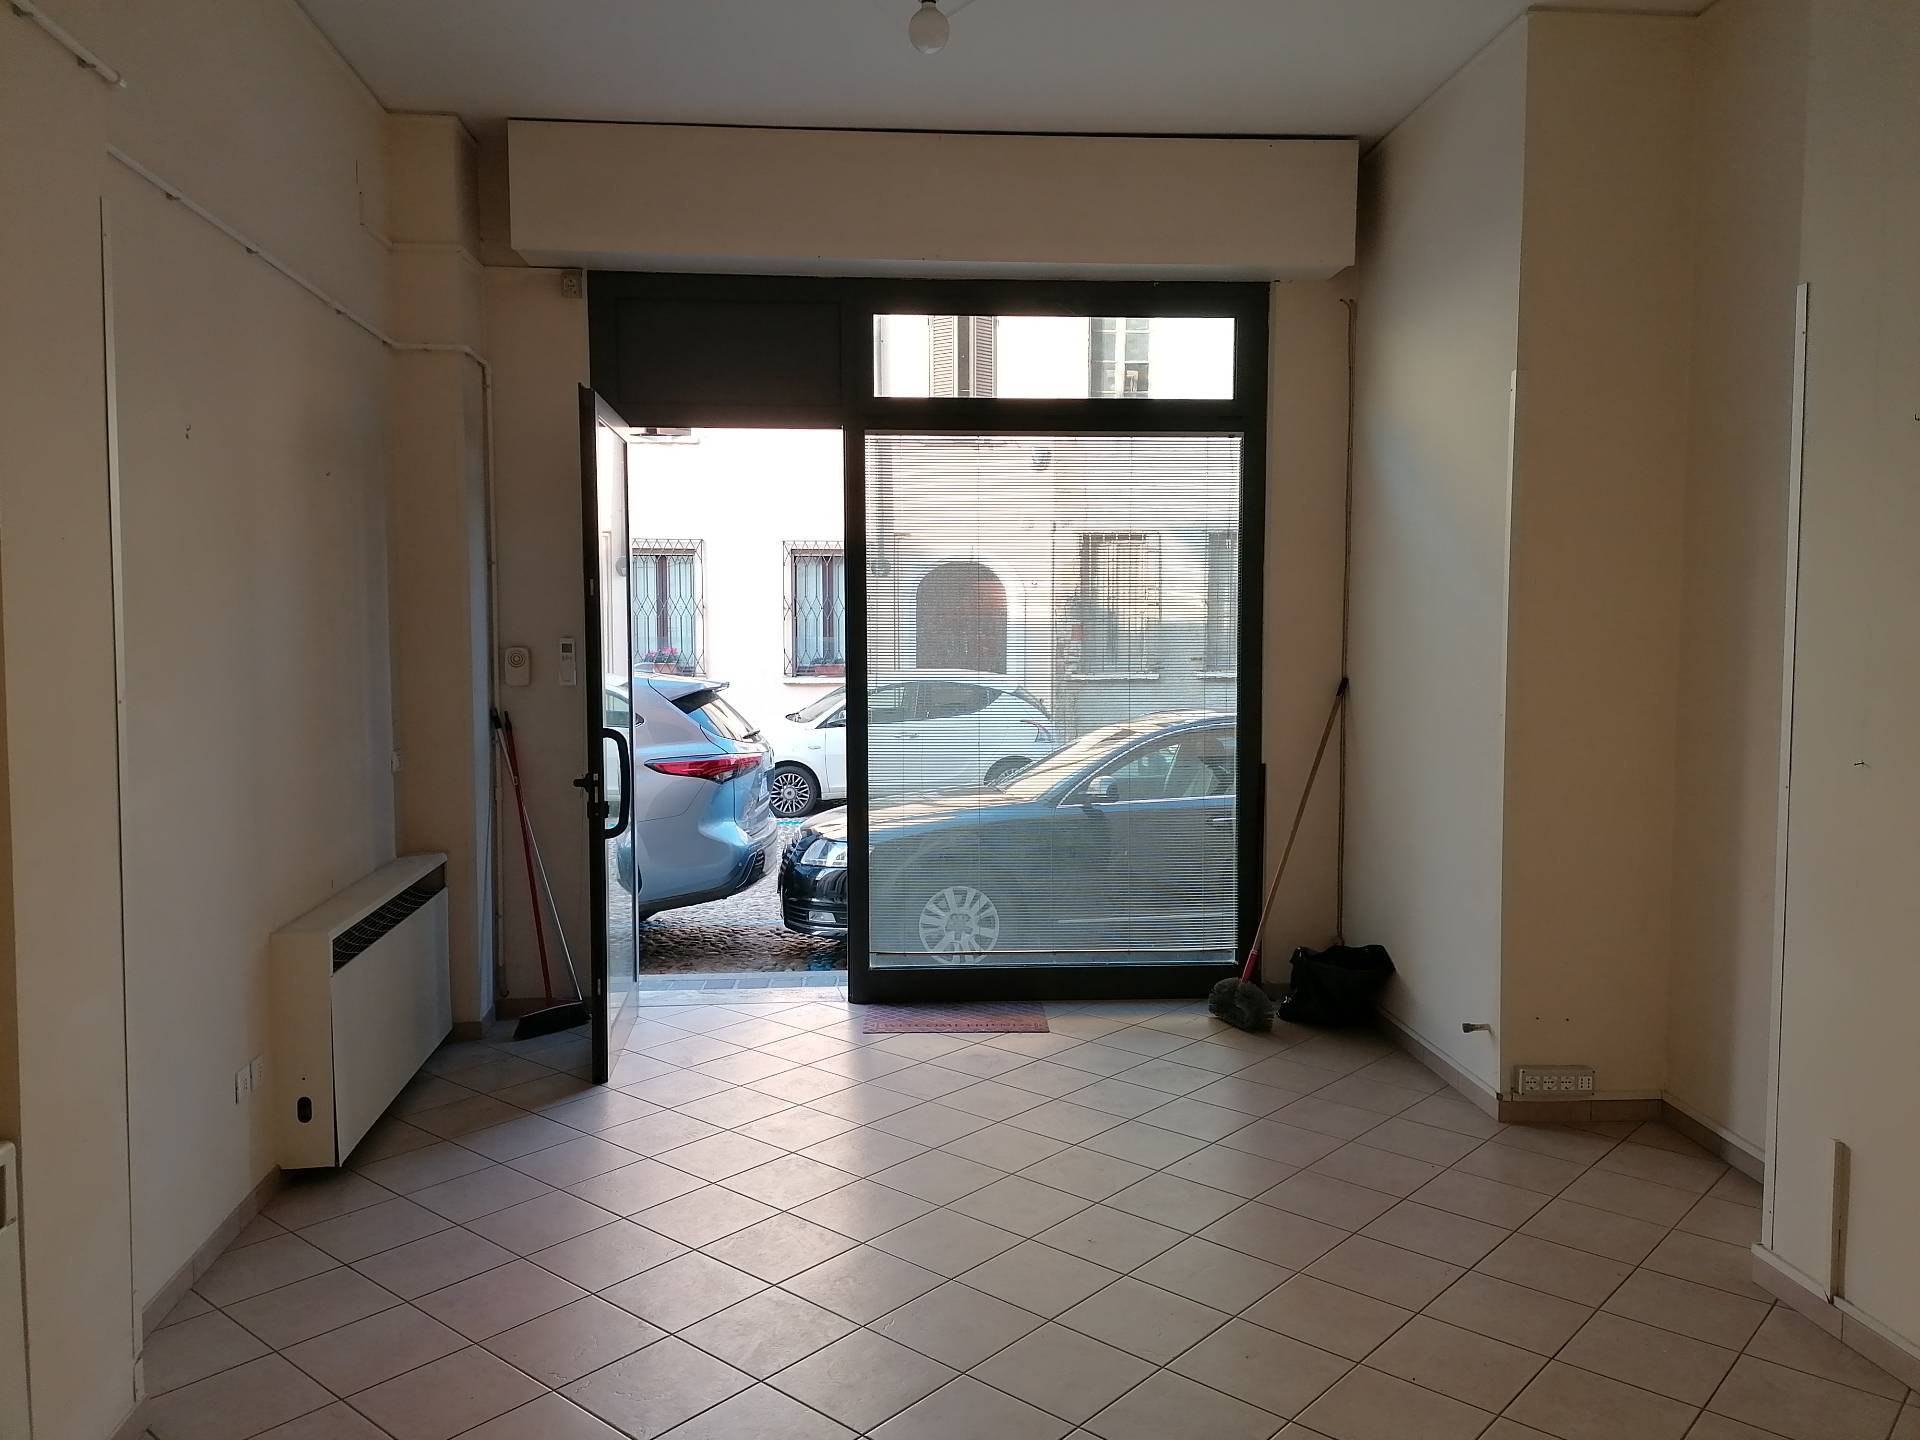 Negozio / Locale in affitto a Mantova, 9999 locali, zona Località: Centrostorico, prezzo € 400 | CambioCasa.it